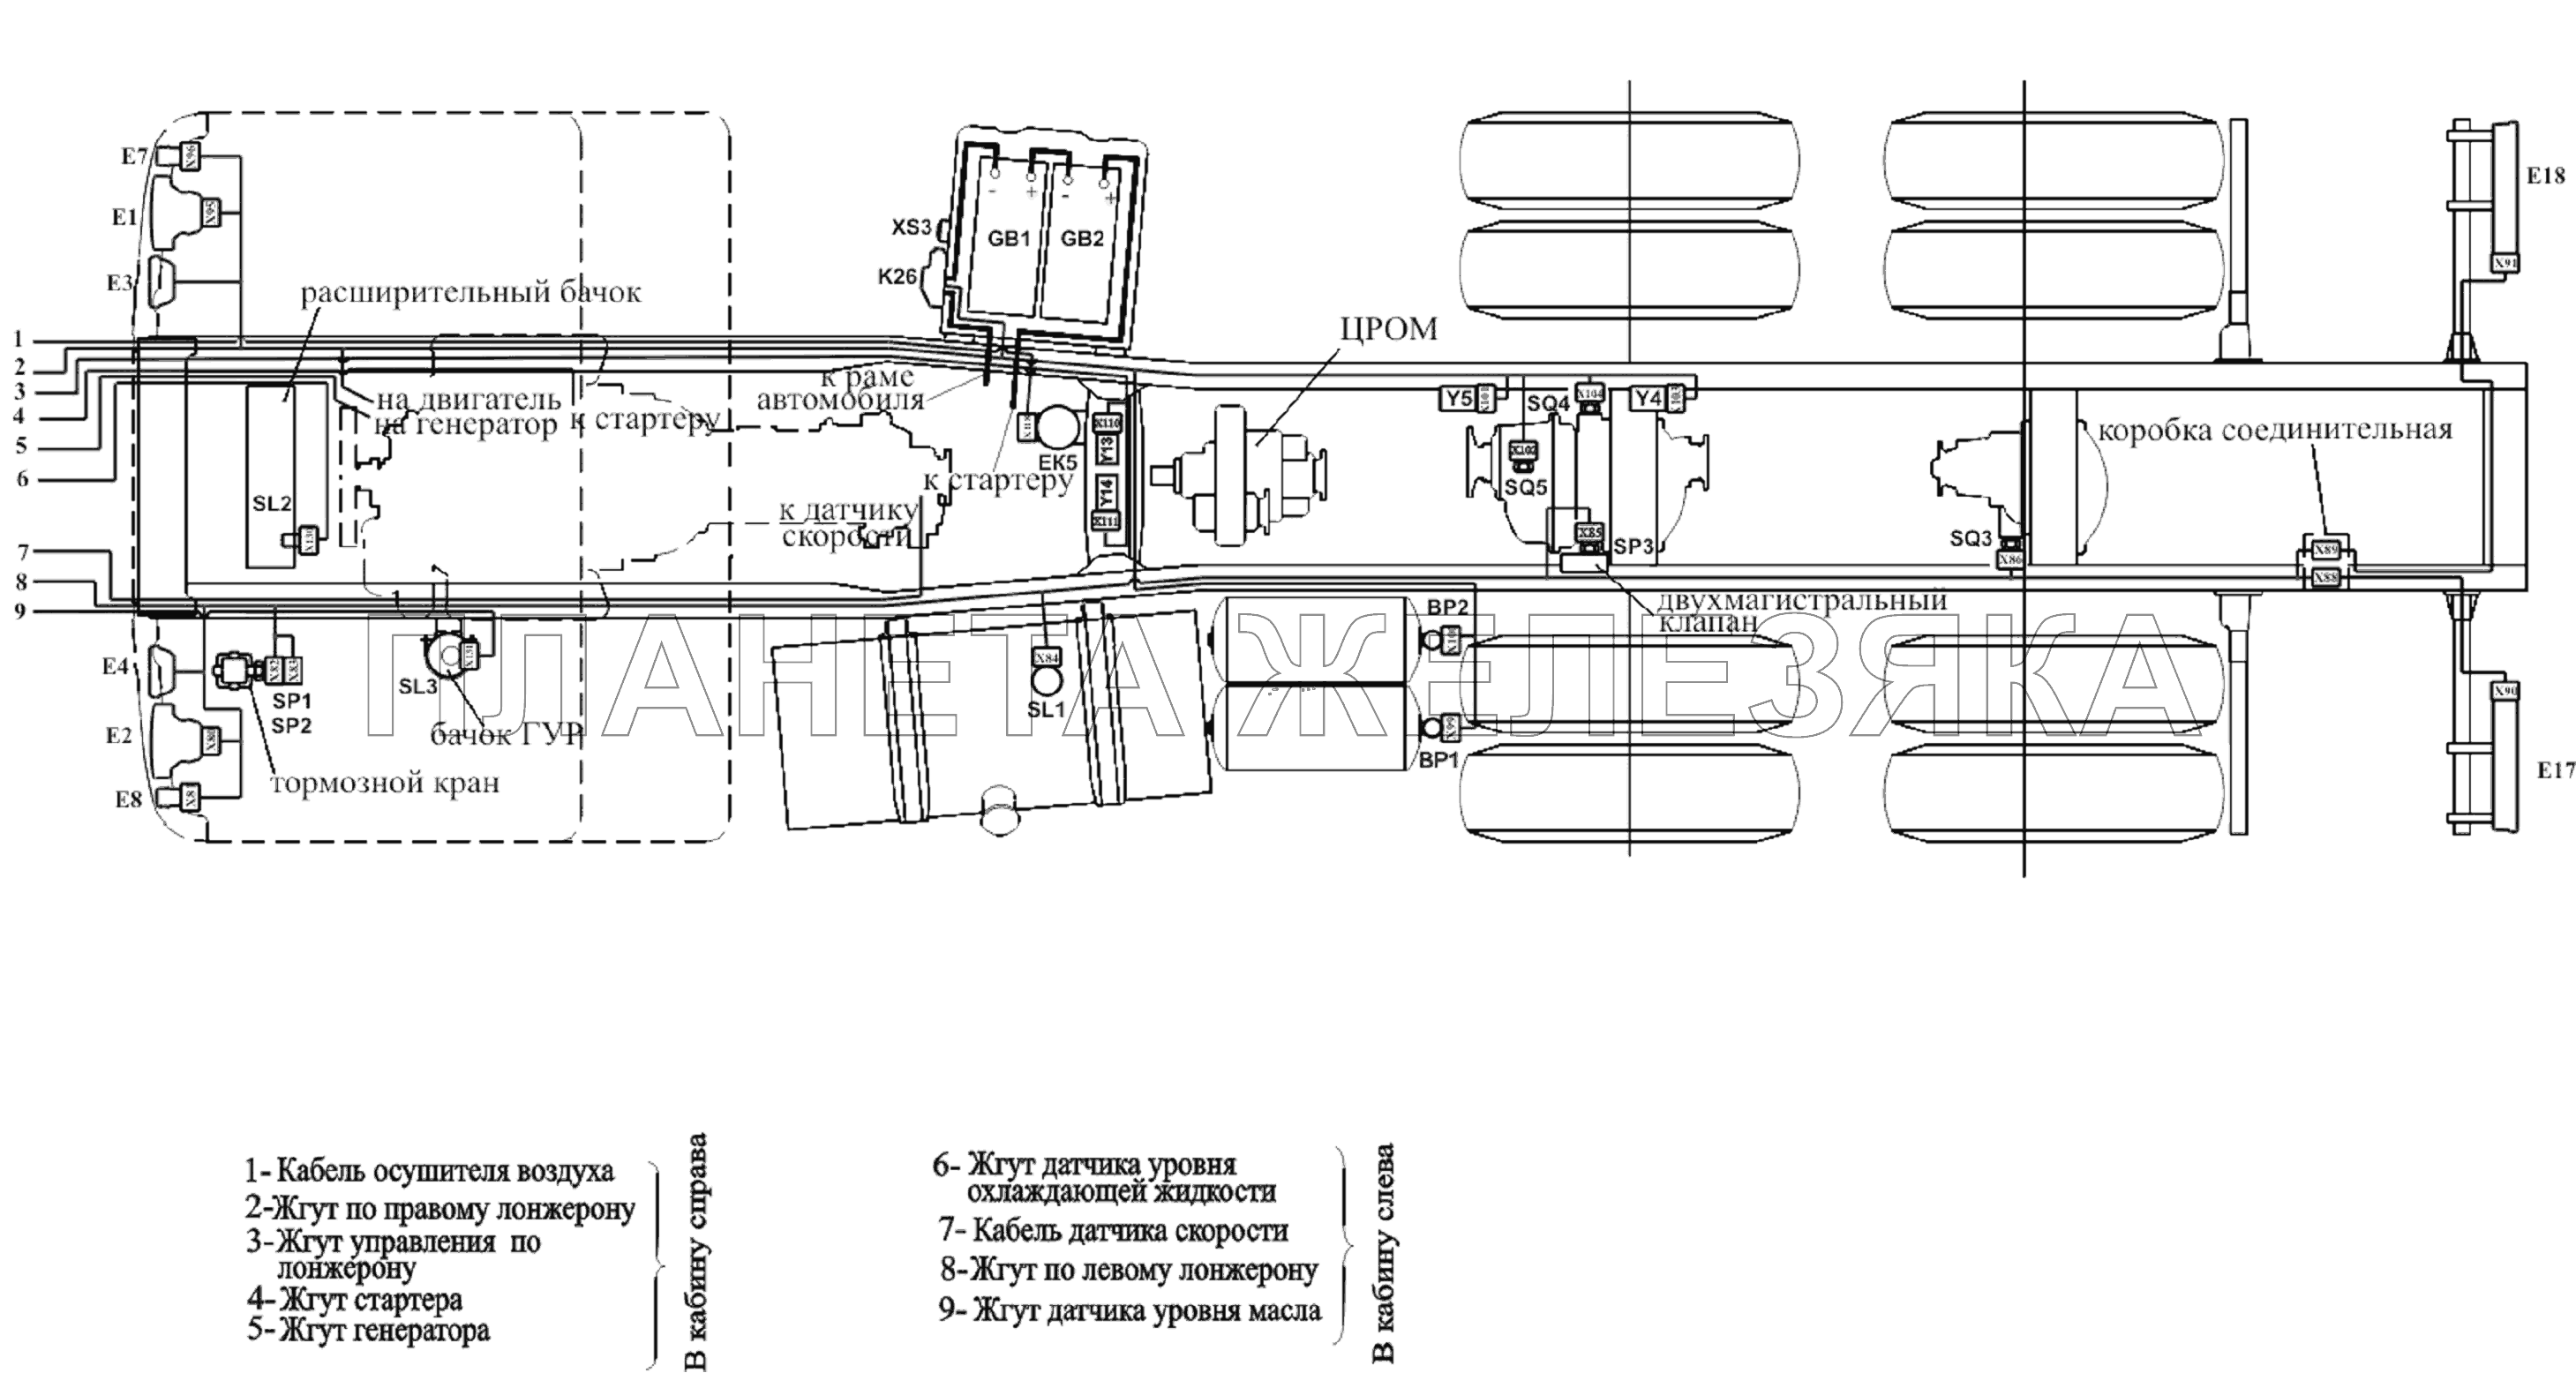 Расположение разъемов и элементов электрооборудования на шасси автомобилей без платформы с ЦРОМ МАЗ-6303A3, 6303A5